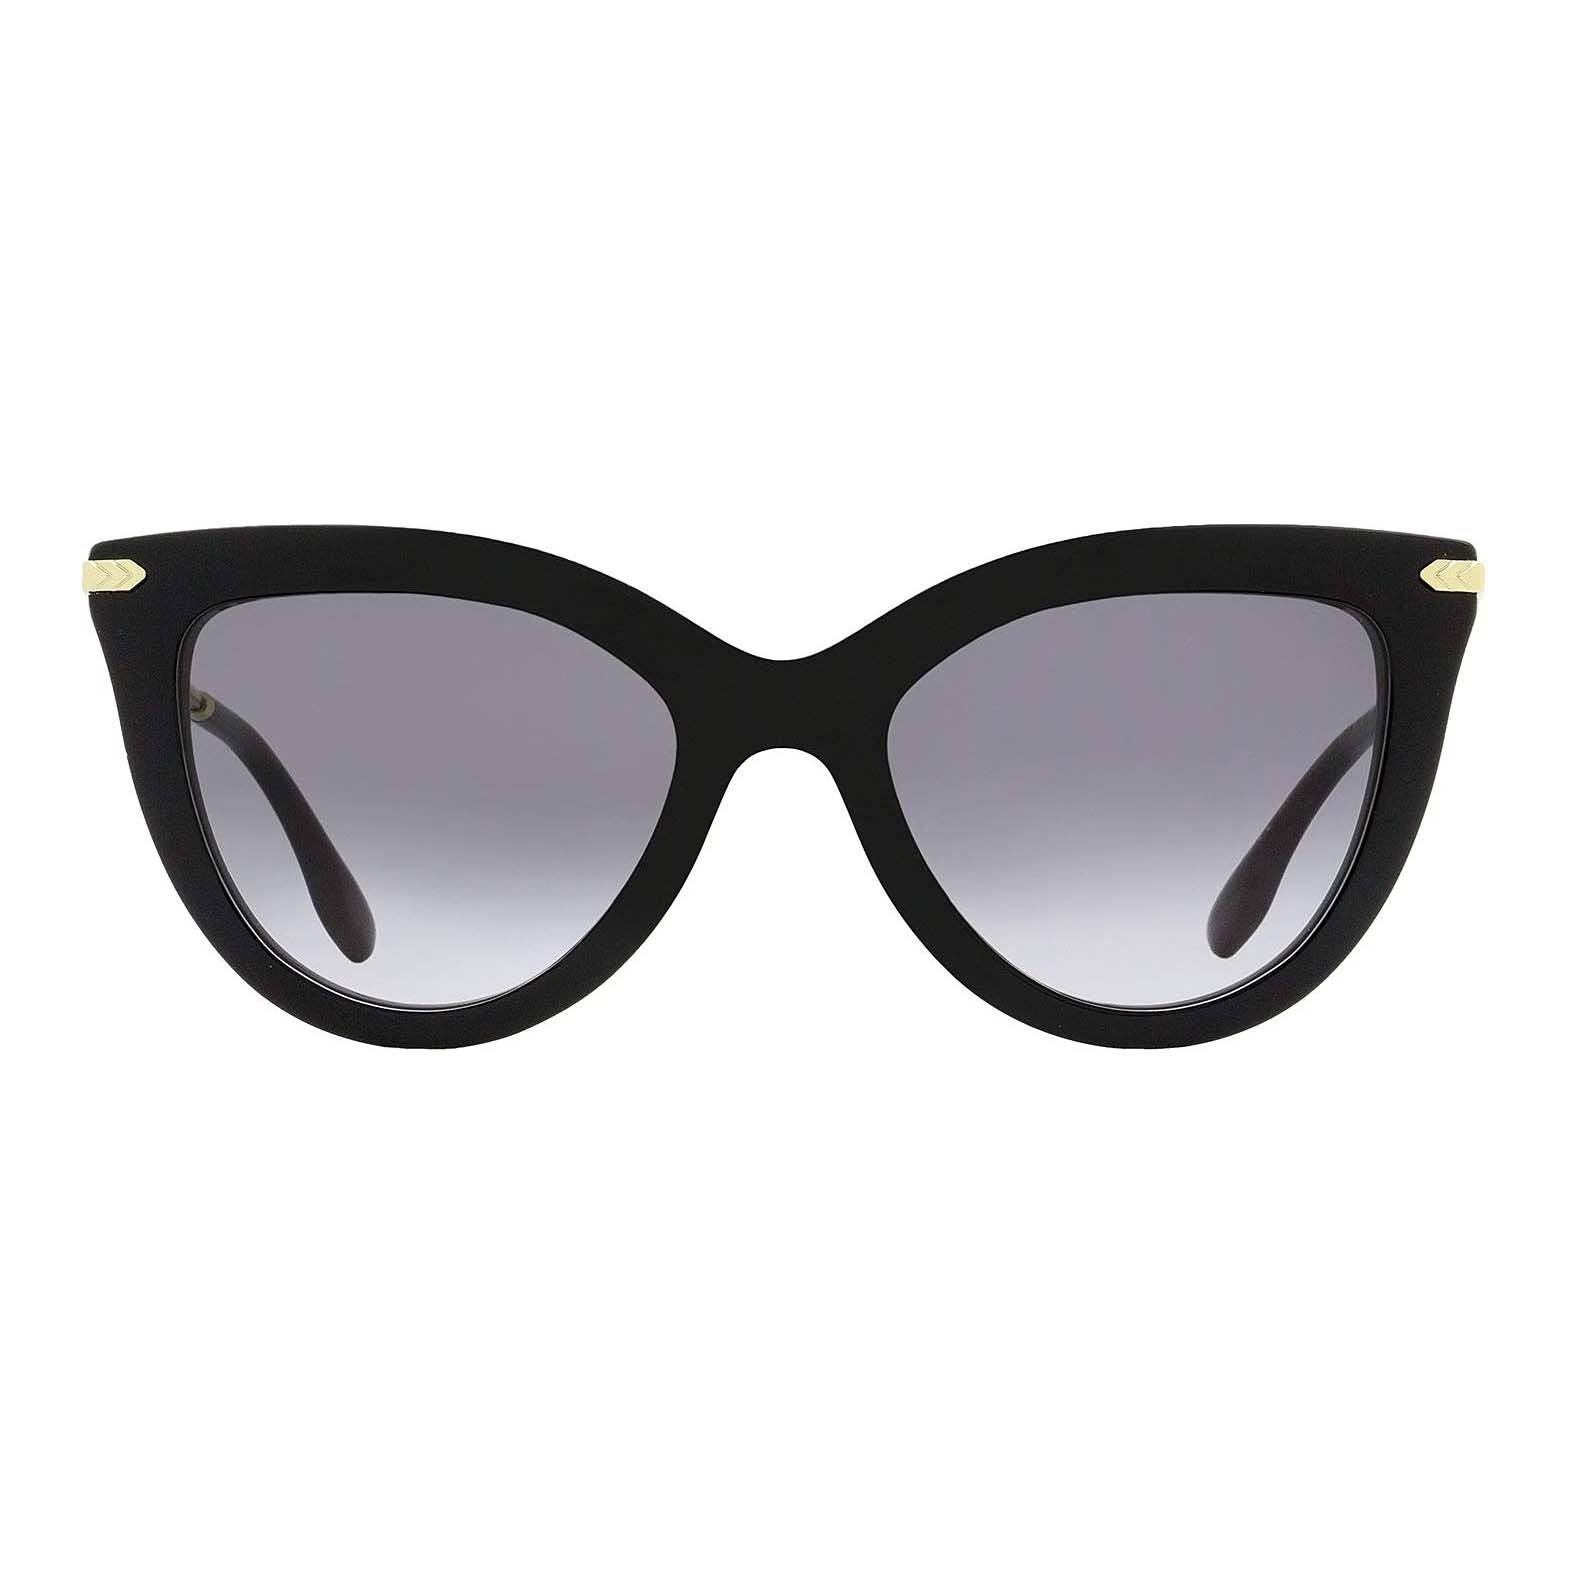 Солнцезащитные очки Victoria Beckham Cat Eye VB621S, черный солнцезащитные очки david beckham кошачий глаз оправа металл градиентные для мужчин золотой